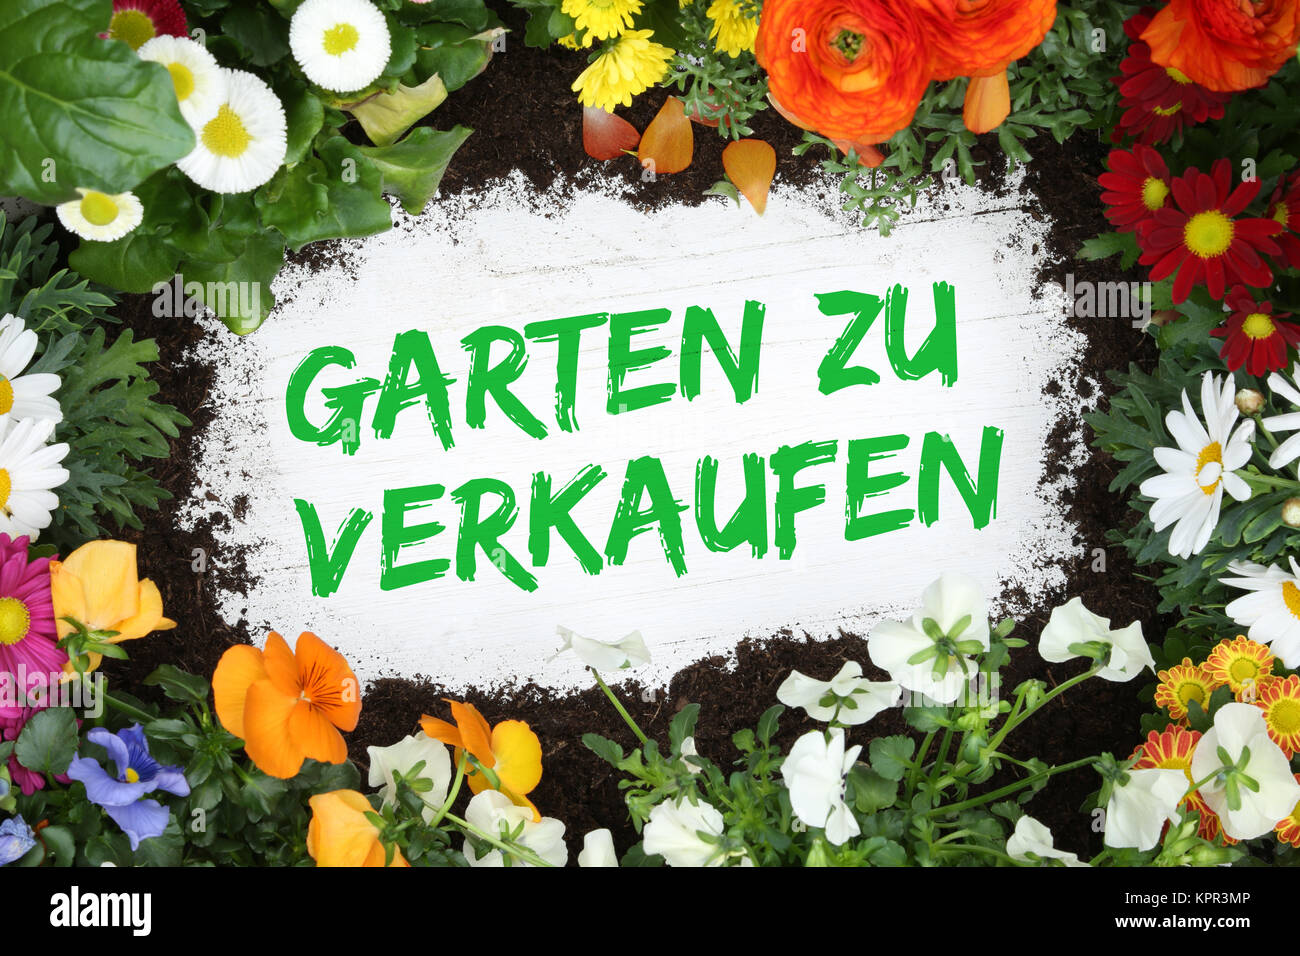 Garten zu verkaufen Verkauf mit Blumen Blume auf Holzbrett Stock Photo